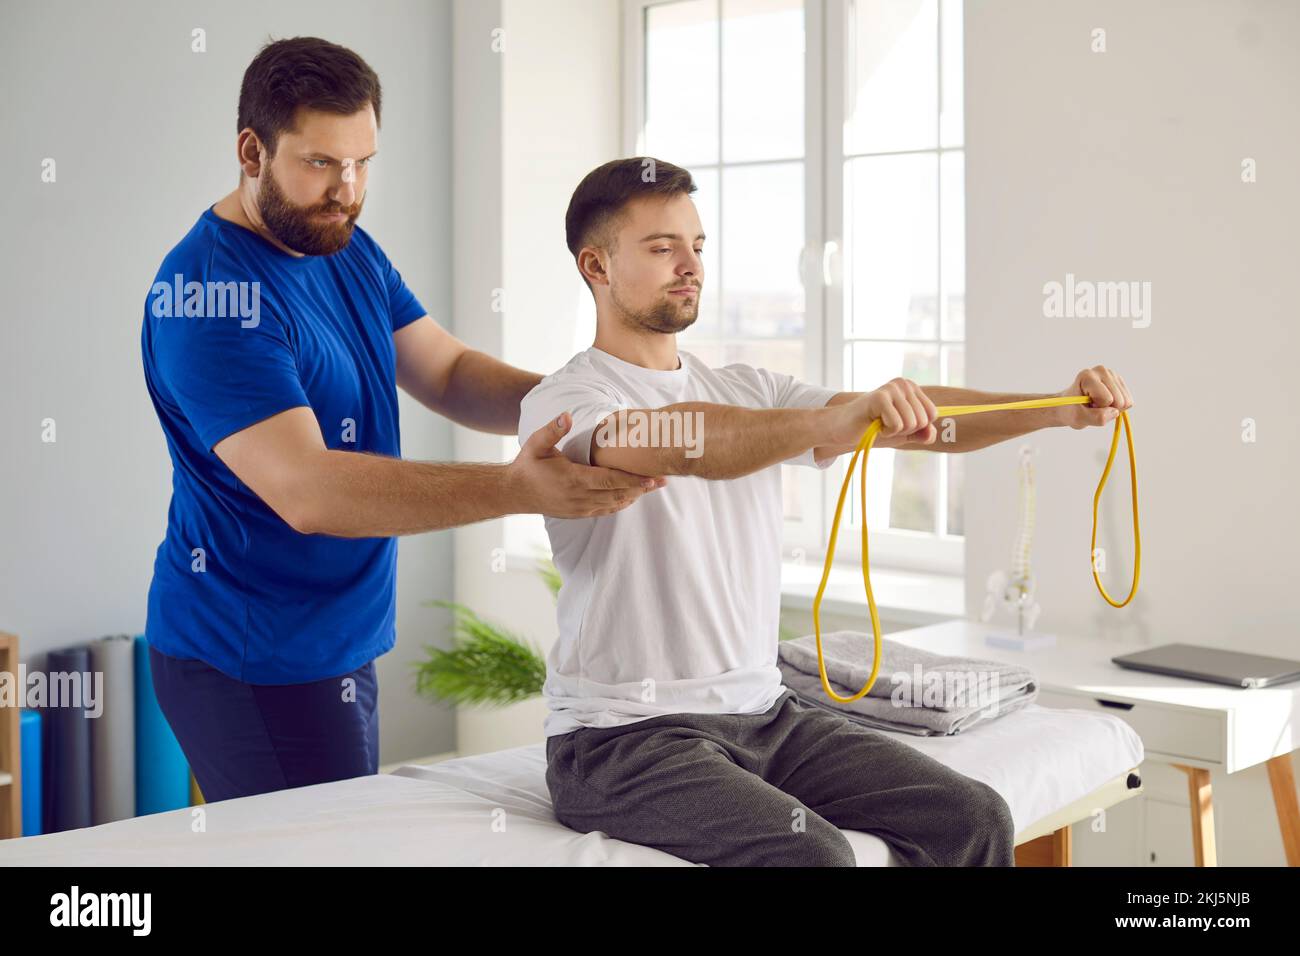 Paciente fisioterapeuta haciendo ejercicios de rehabilitación física con banda de resistencia Foto de stock